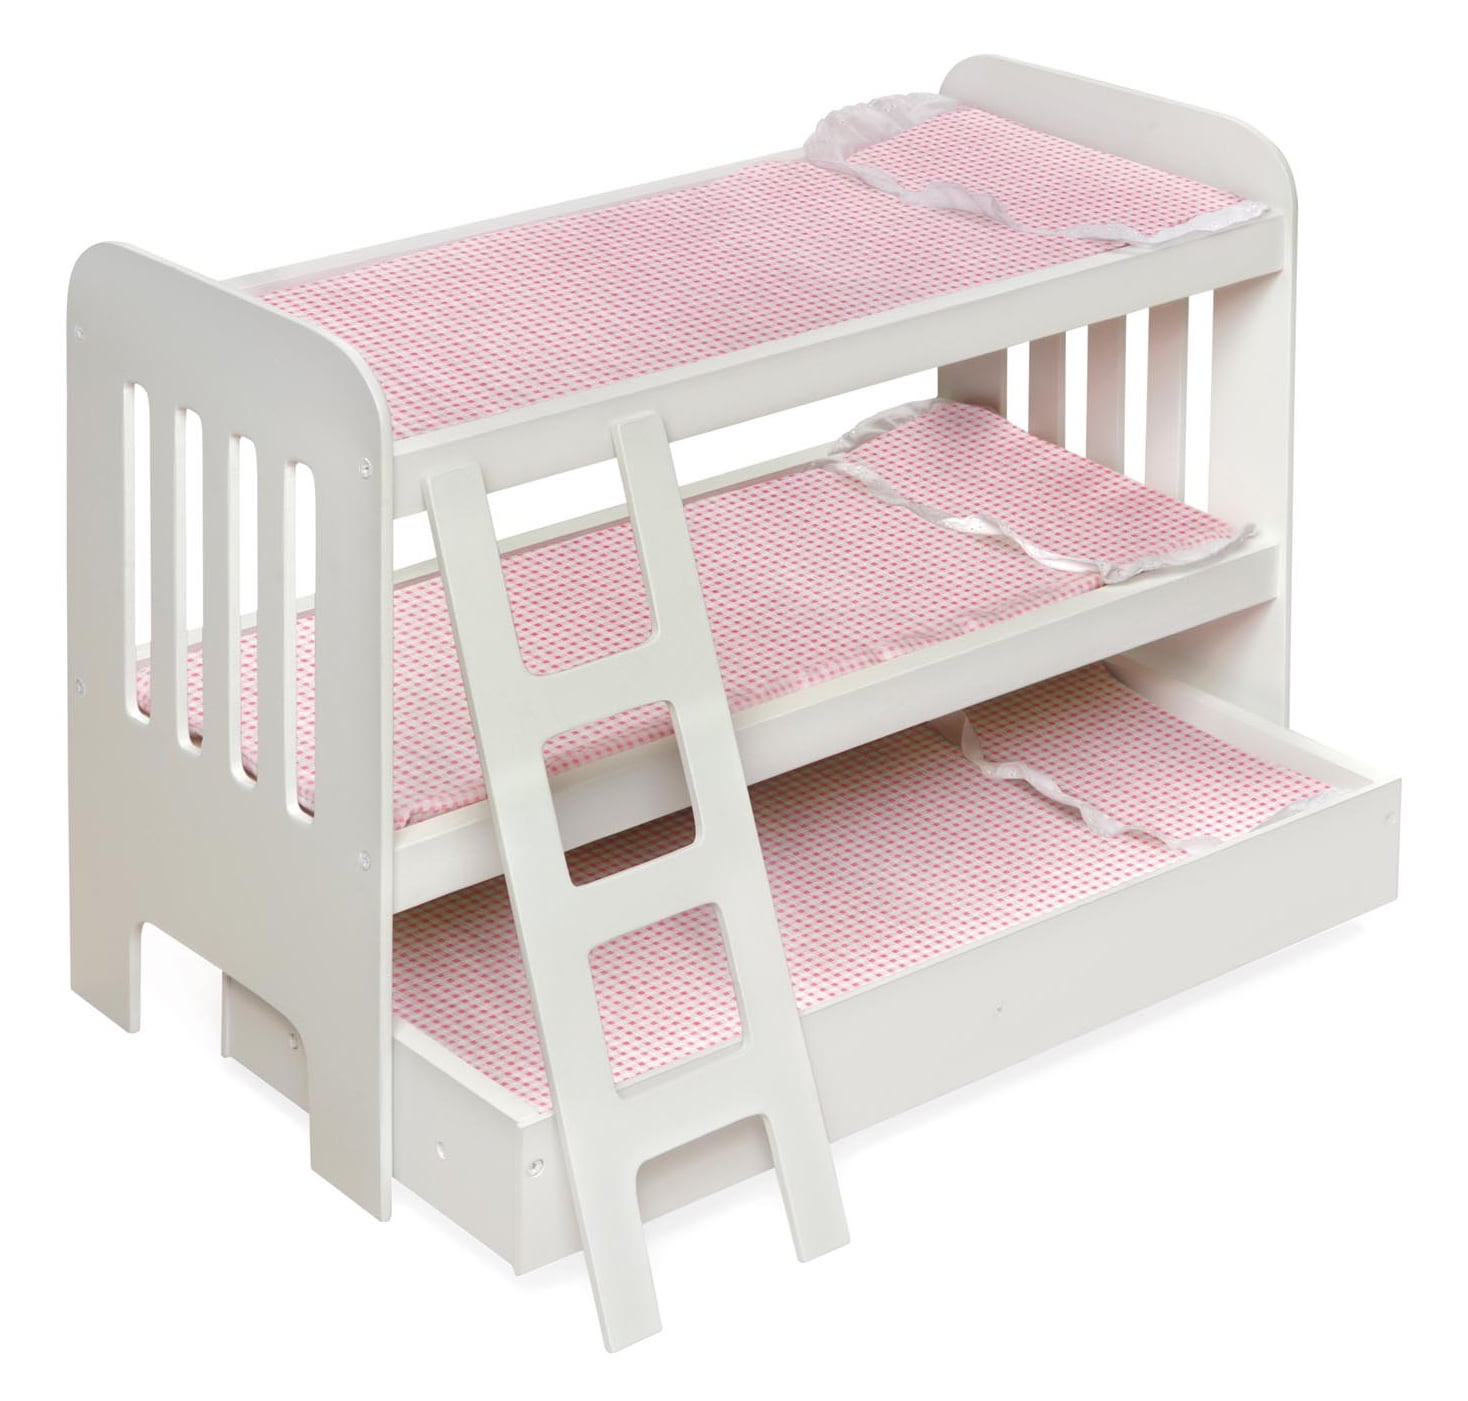 Badger Basket Trundle Doll Bunk Bed With Ladder Pink, Us Navy Bunk Beds